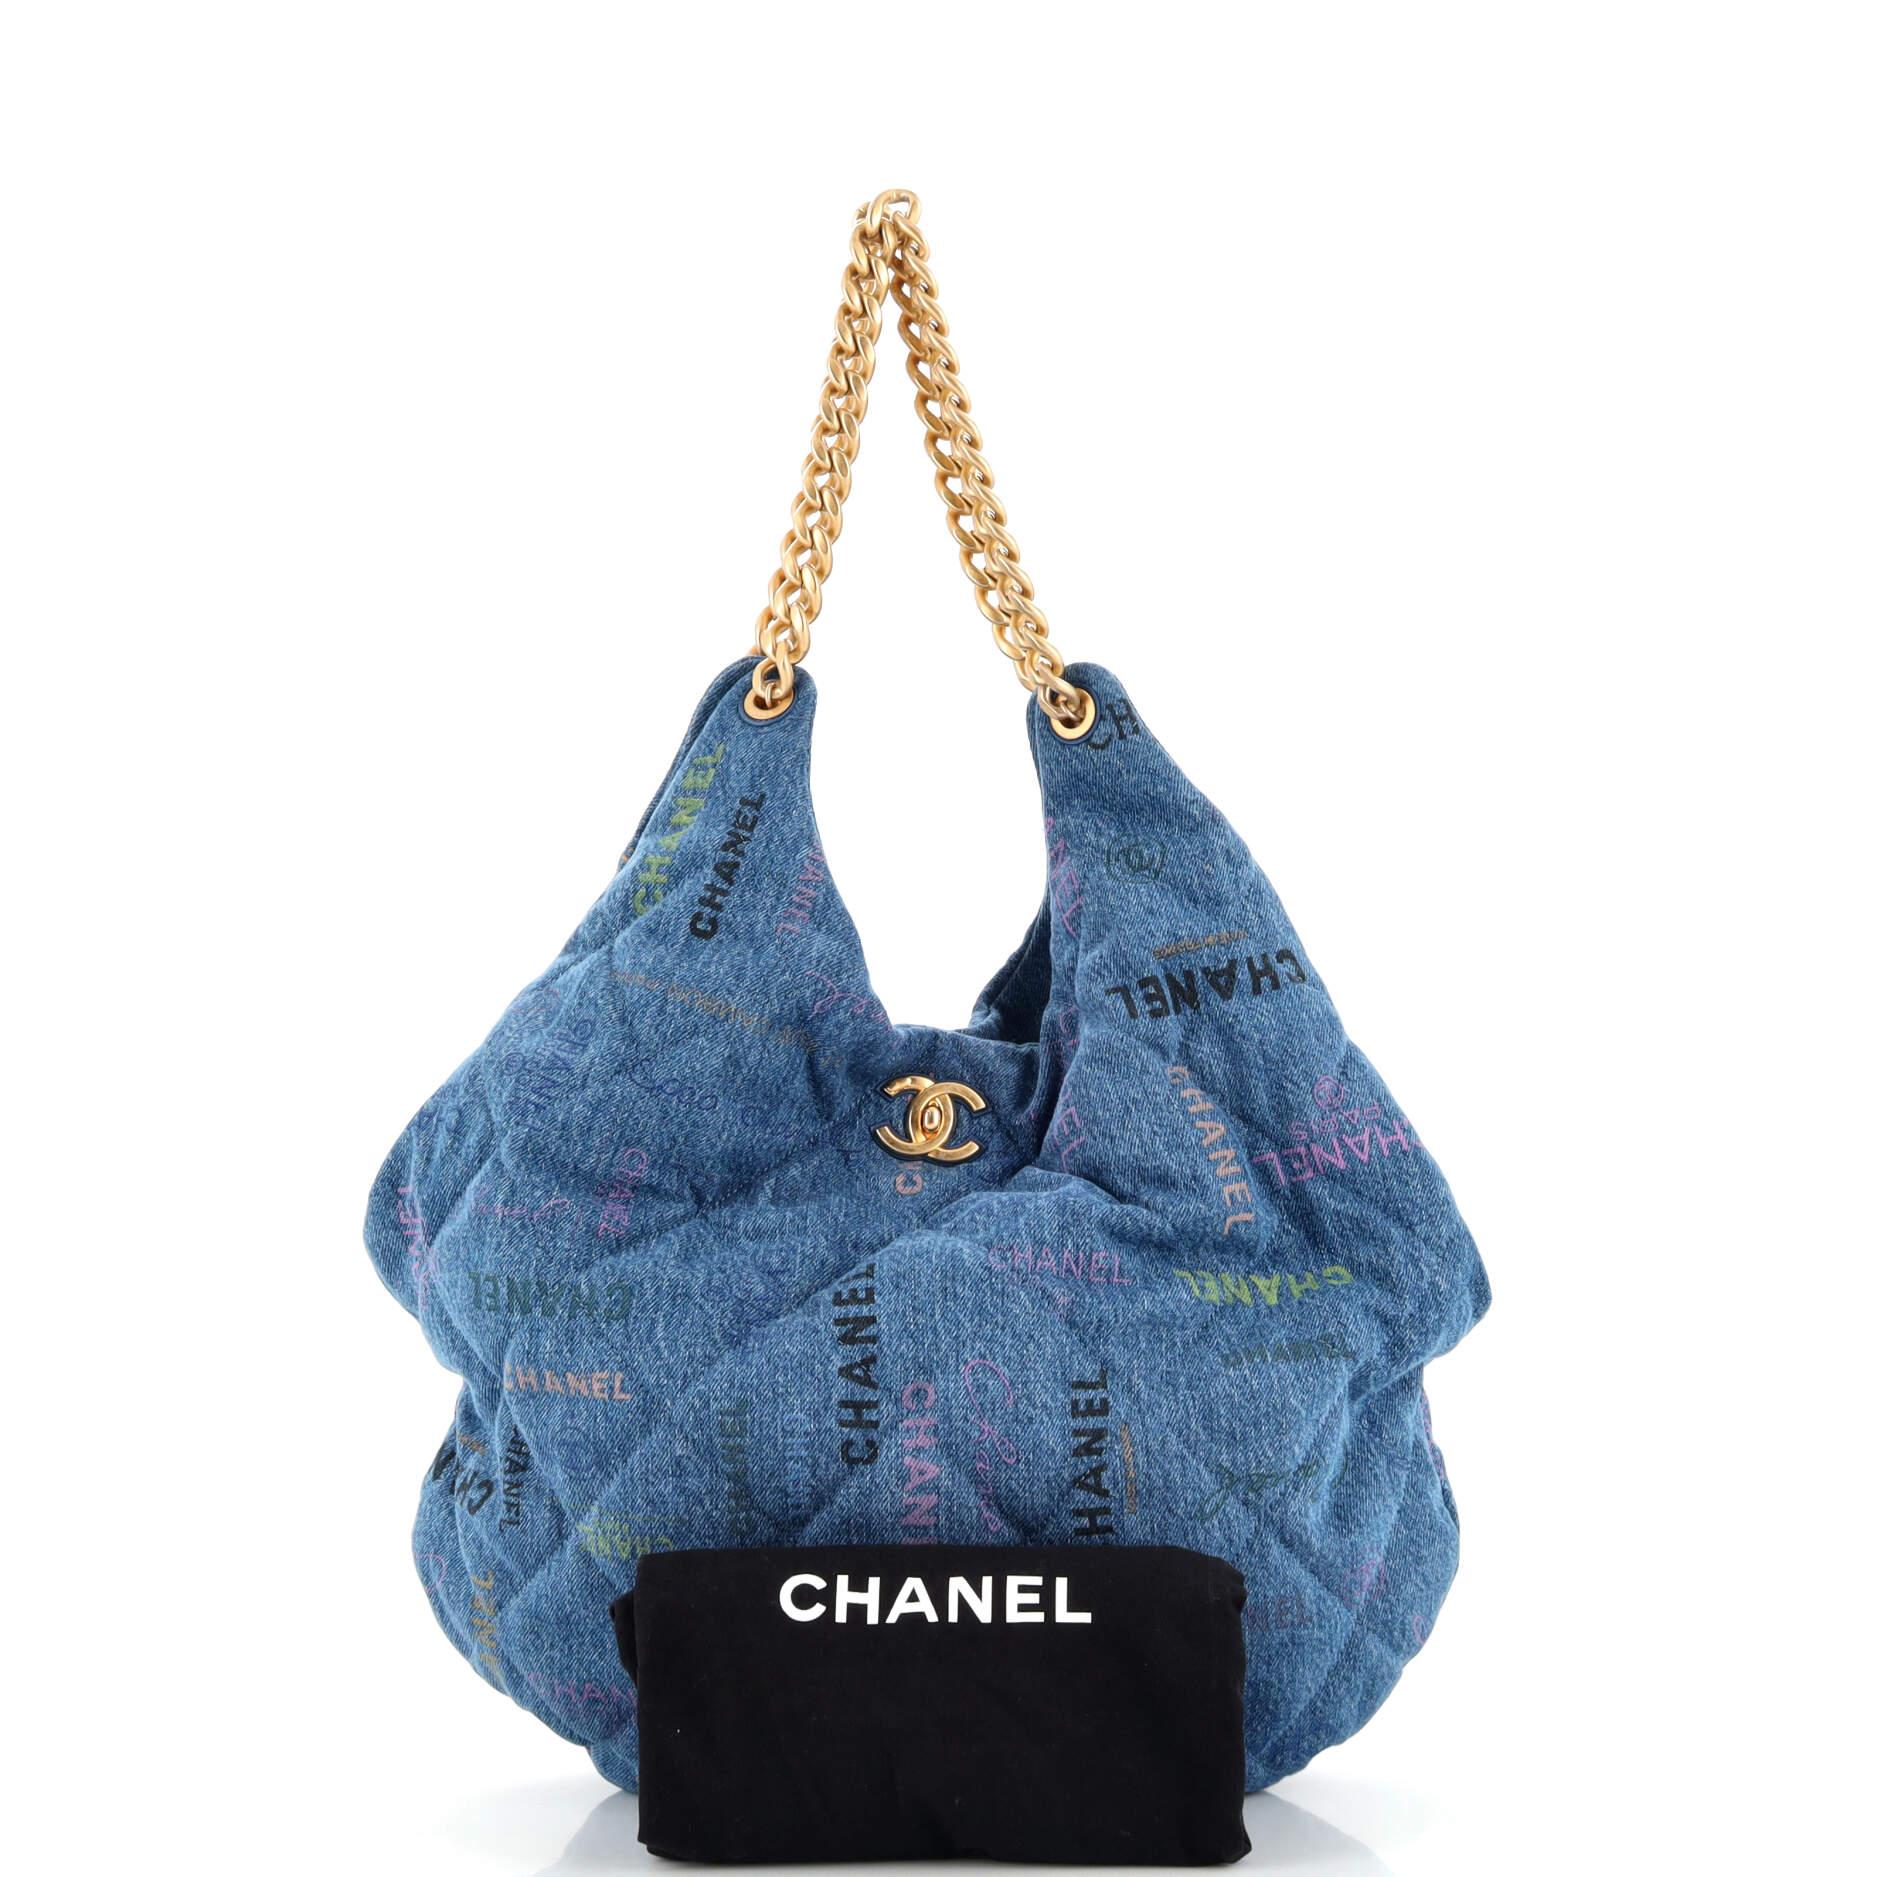 CHANEL Hobo Handbags & Bags Denim Exterior for Women